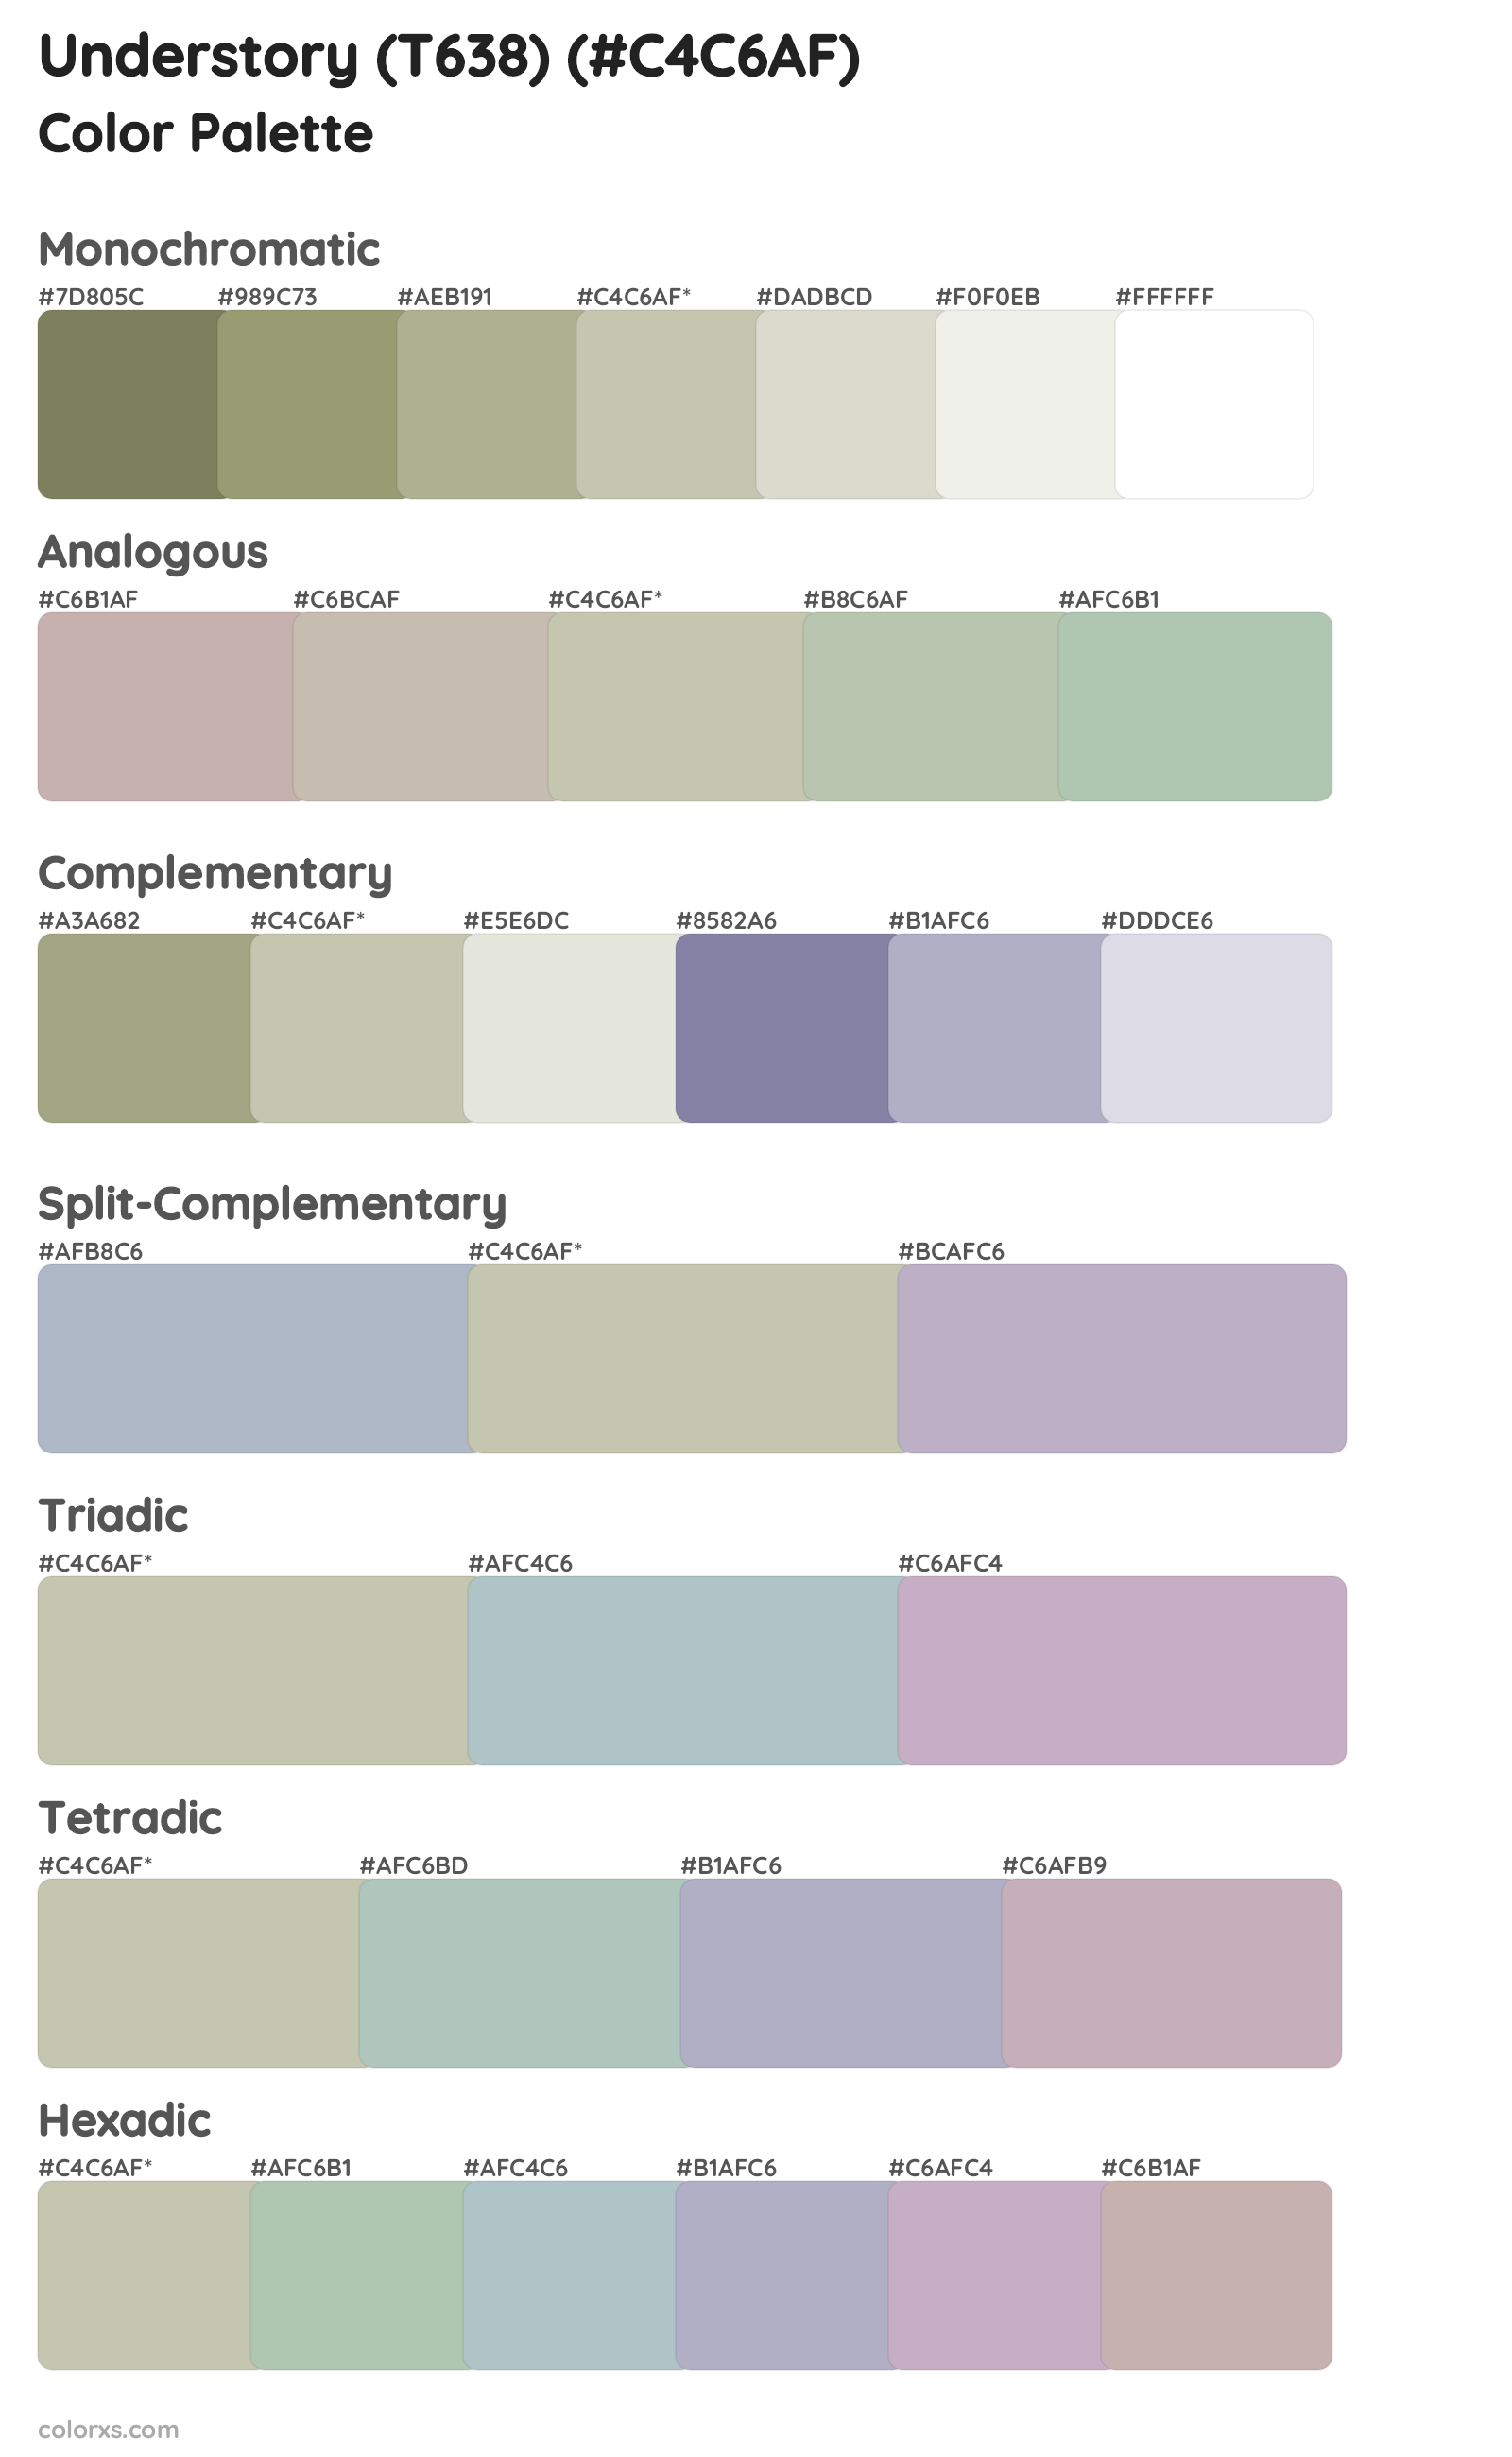 Understory (T638) Color Scheme Palettes